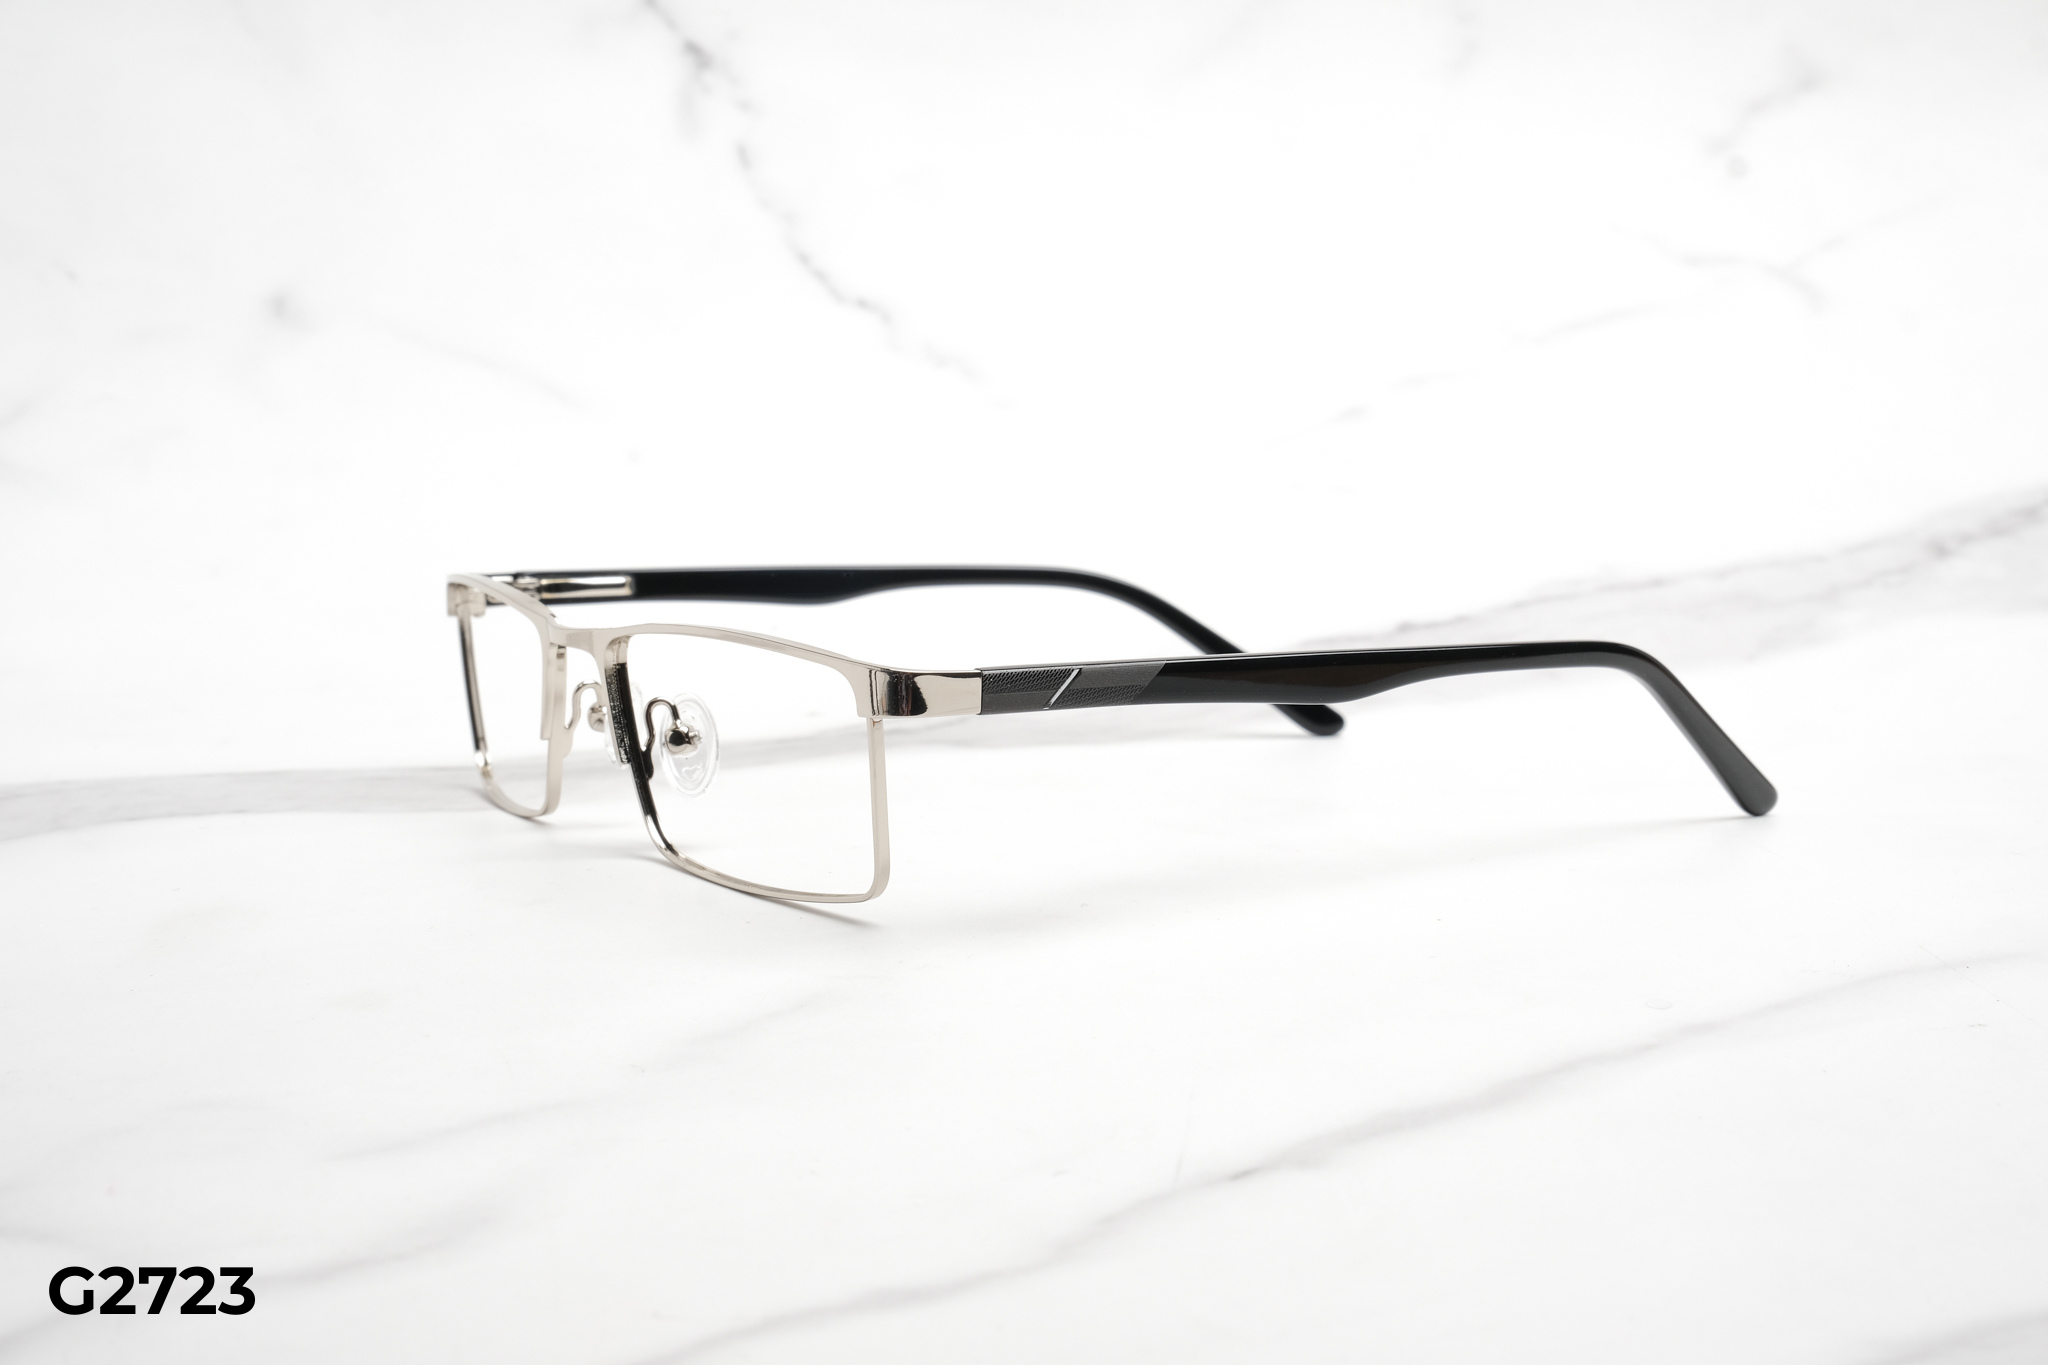  Rex-ton Eyewear - Glasses - G2723 